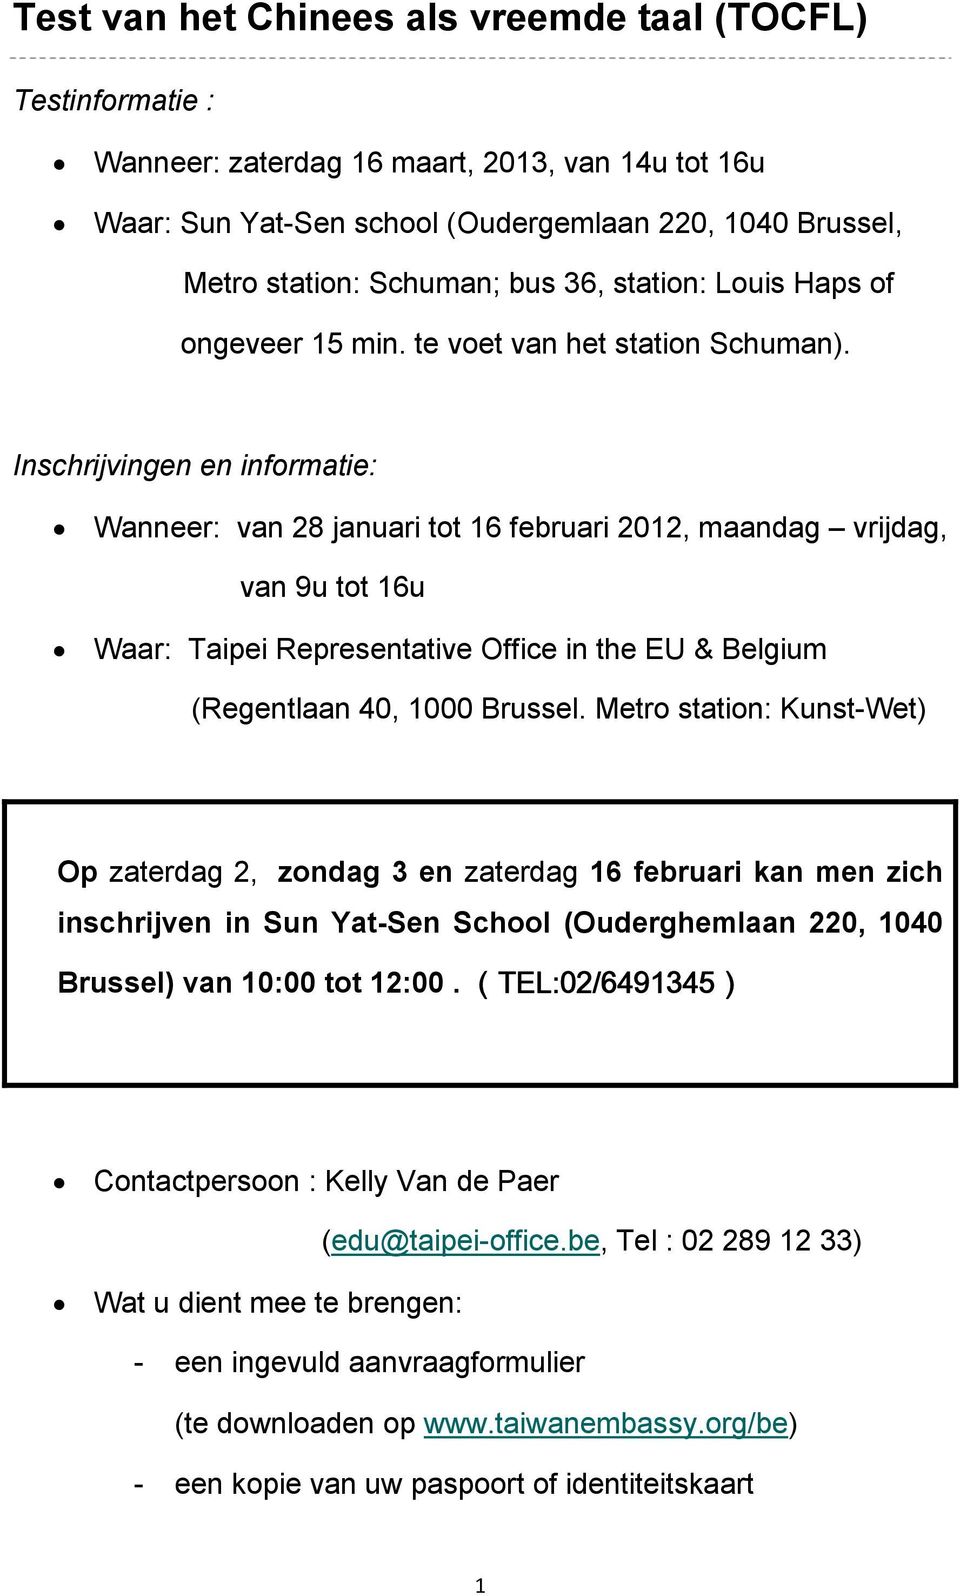 Inschrijvingen en informatie: Wanneer: van 28 januari tot 16 februari 2012, maandag vrijdag, van 9u tot 16u Waar: Taipei Representative Office in the EU & Belgium (Regentlaan 40, 1000 Brussel.